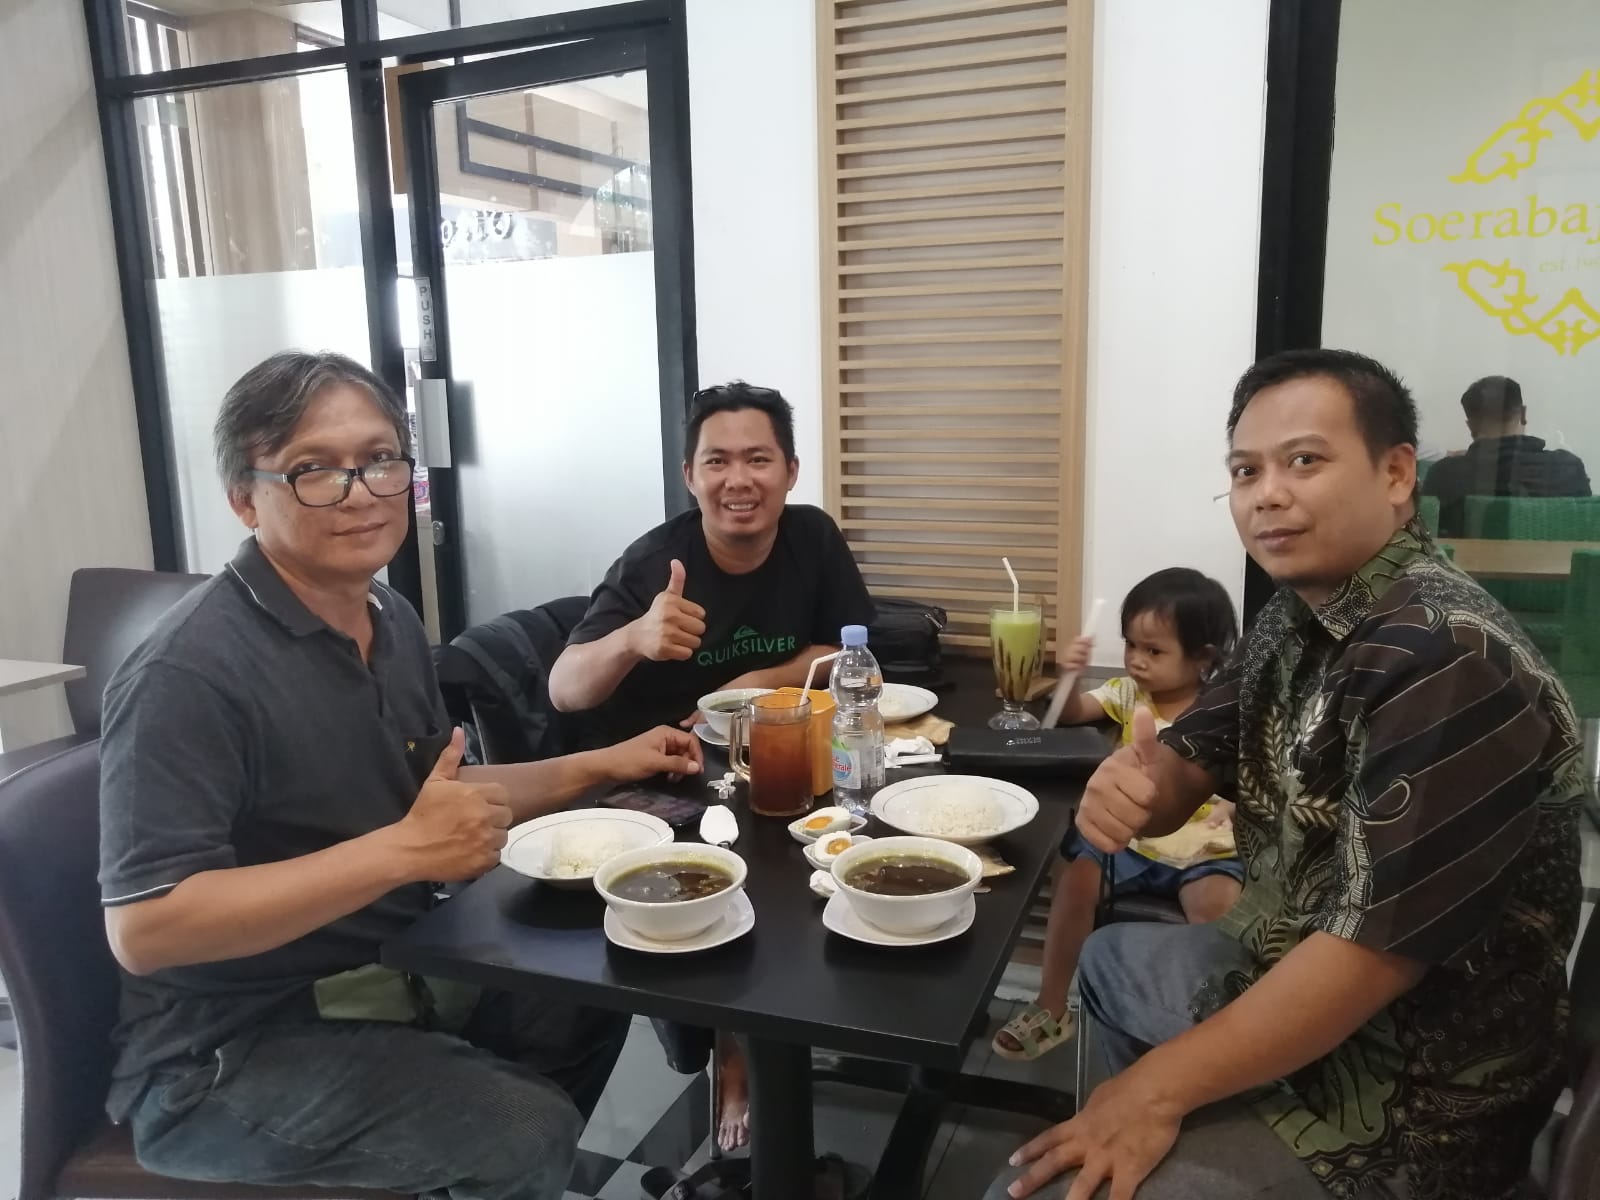 Silaturahmi Pemred Pers Bhayangkara dan Suara Utama di Soerabaja Cafe. FOTO: Mas Andre/Kusnandar (SUARA UTAMA)